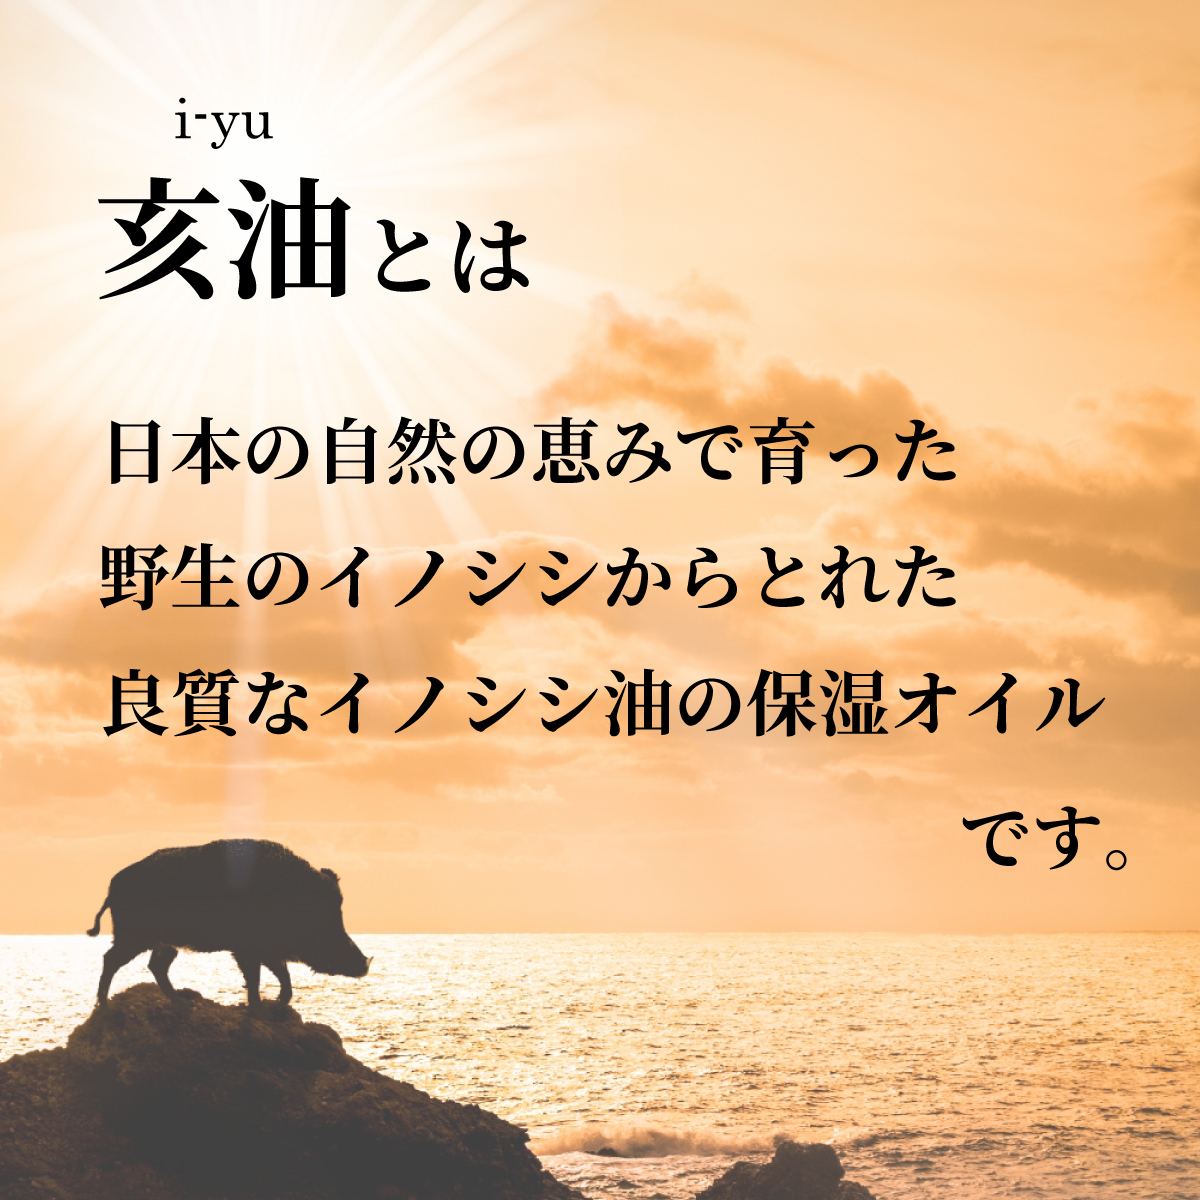 亥油は日本の自然で育った野生のイノシシからとれた良質なイノシシ油の保湿オイルであることを載せたバナー画像